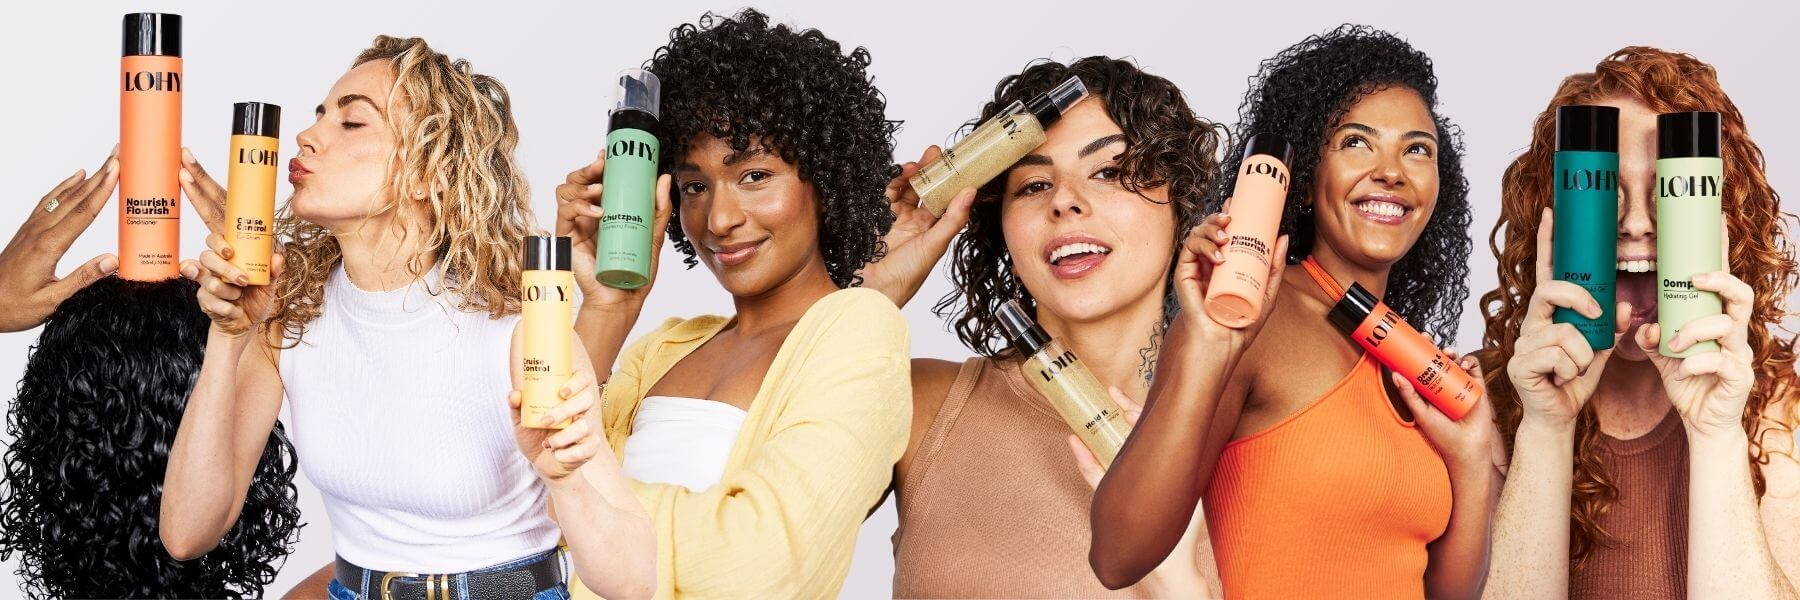 curly girls holding bottles